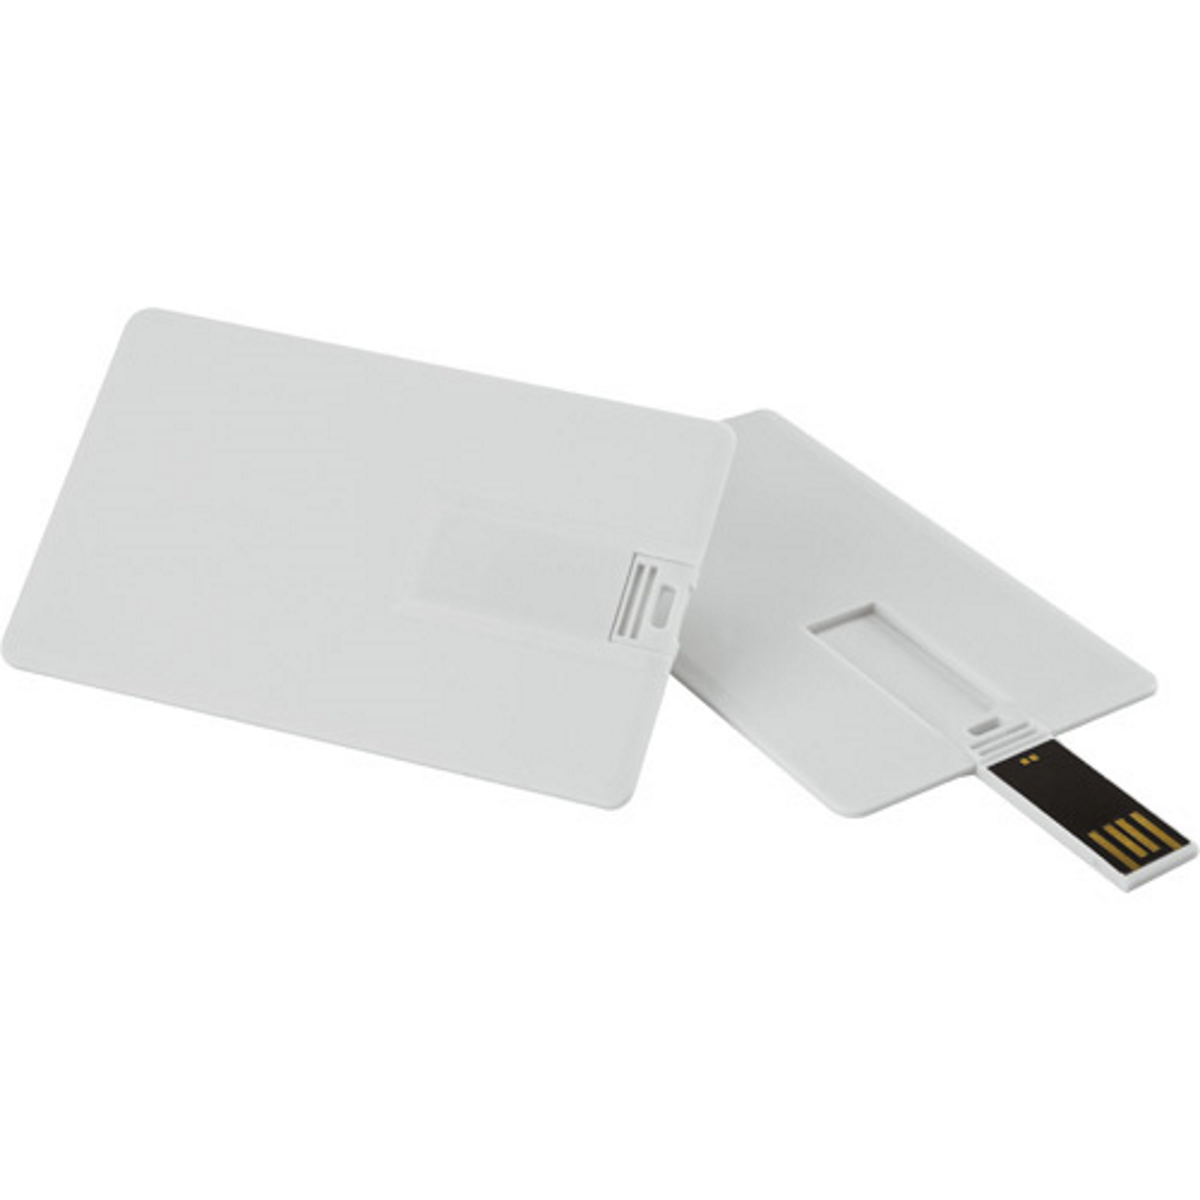 GB) ® USB-Stick GERMANY USB 16 (Weiss, Kreditkarte